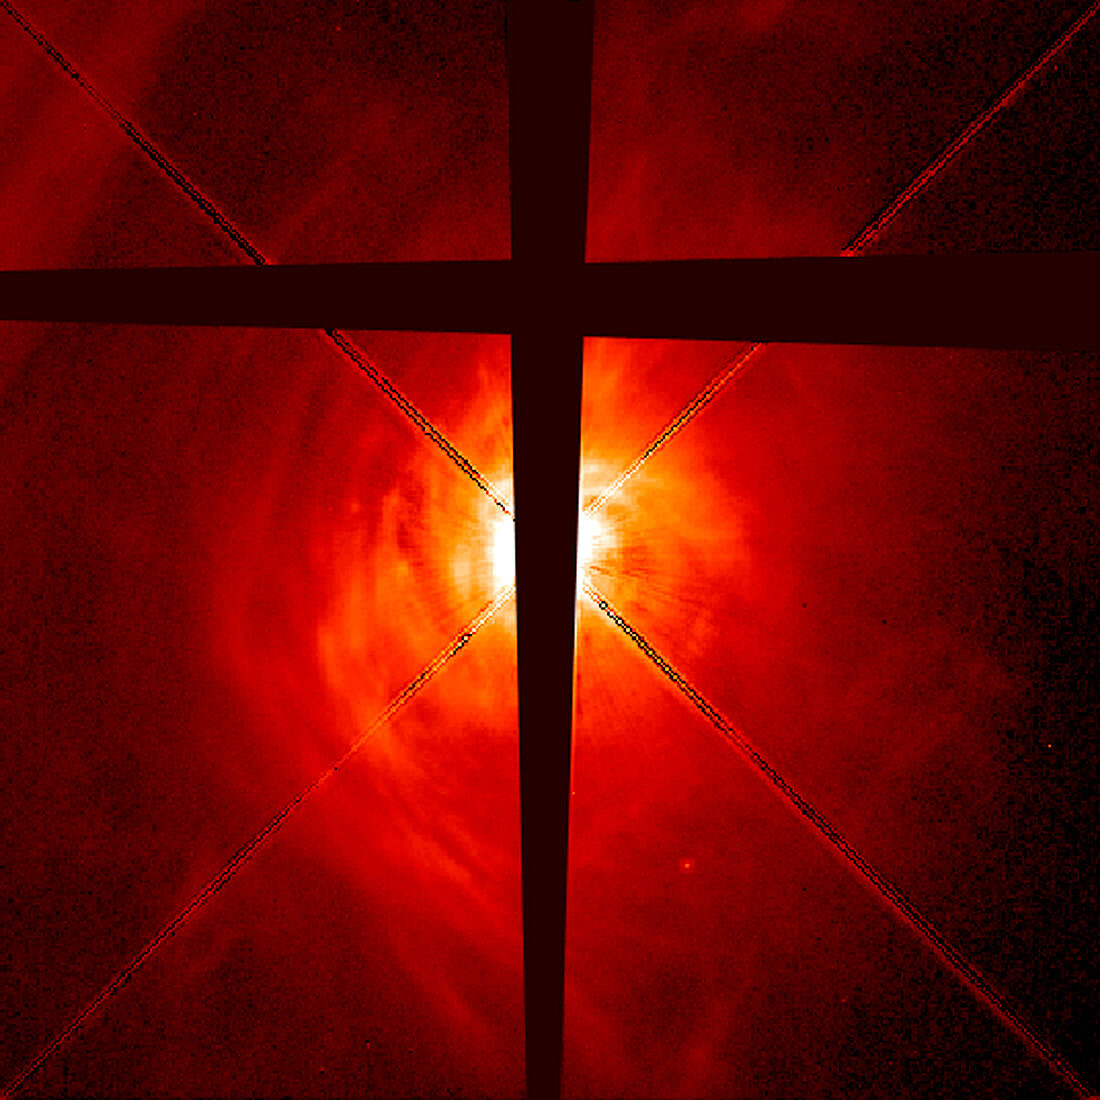 HST image of dust disk around new star AB Aurigae